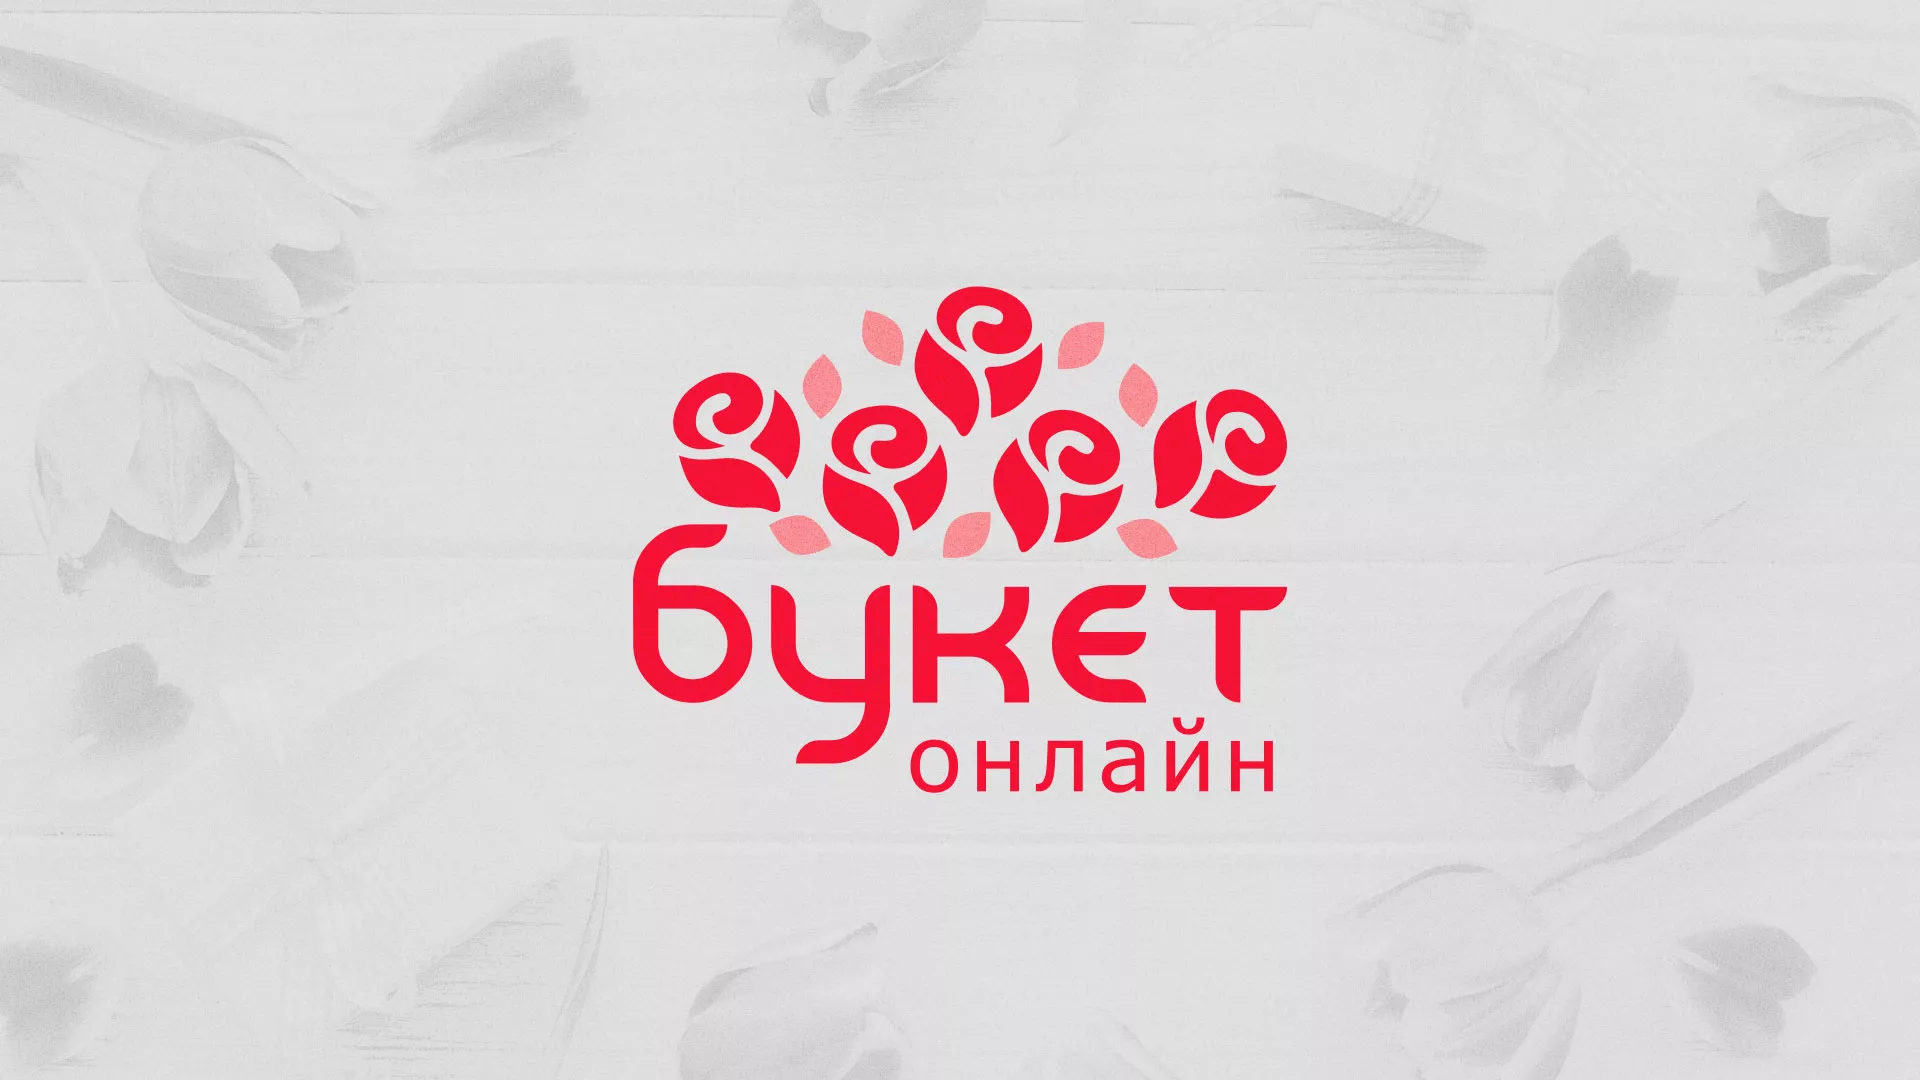 Создание интернет-магазина «Букет-онлайн» по цветам в Подольске